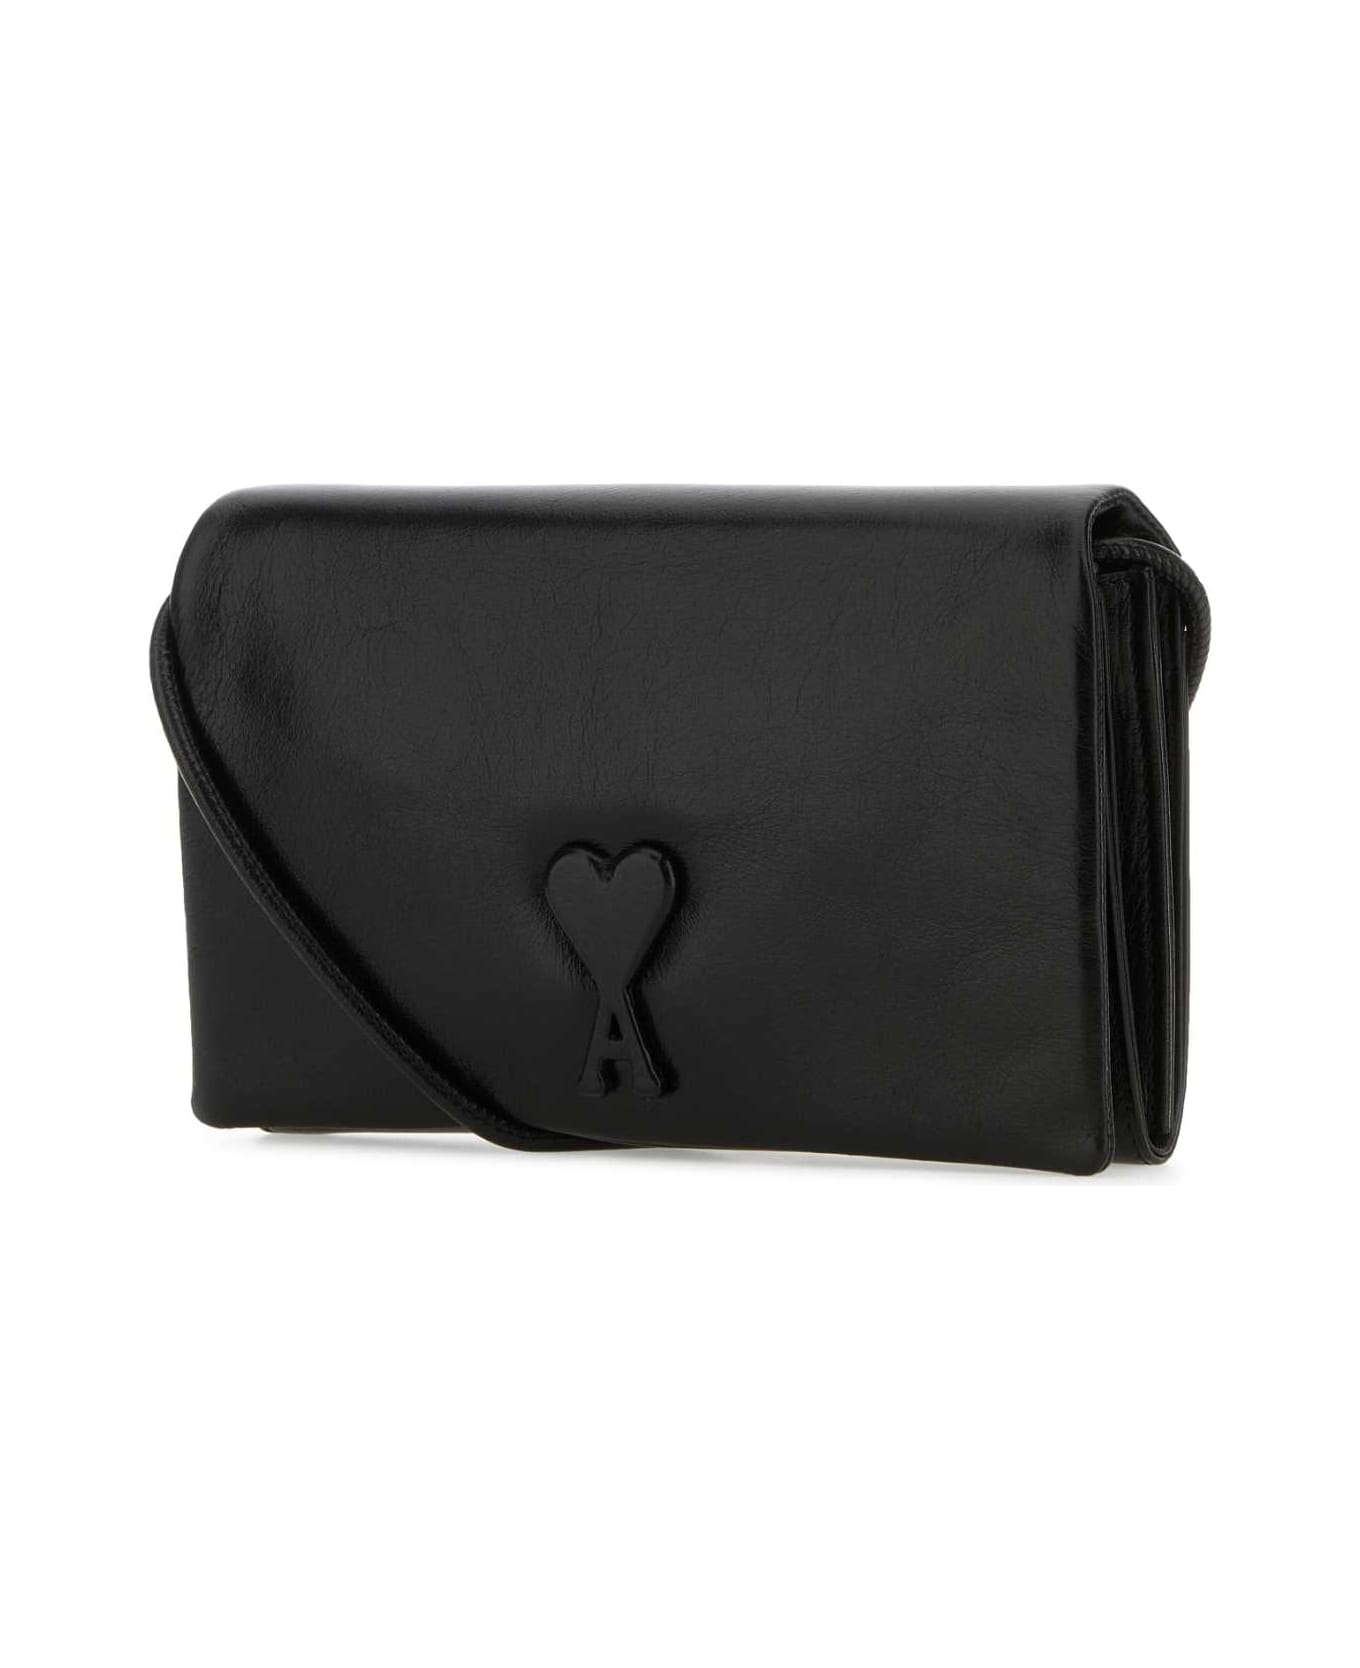 Ami Alexandre Mattiussi Black Leather Voulez-vous Wallet - Black 財布